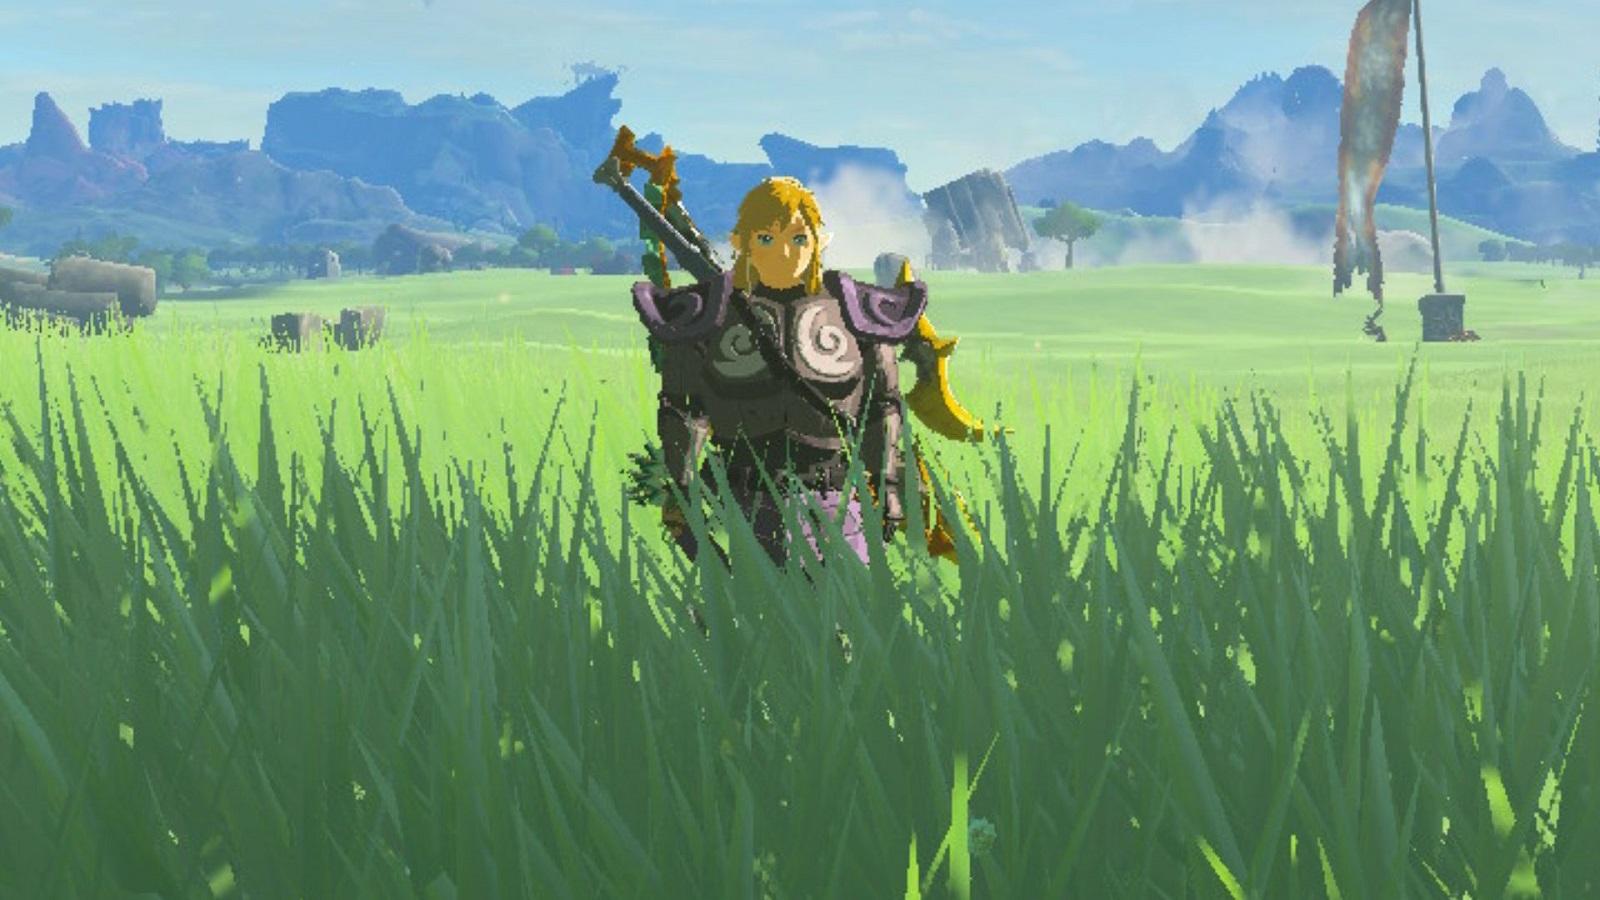 Link wearing Phantom armor in a field